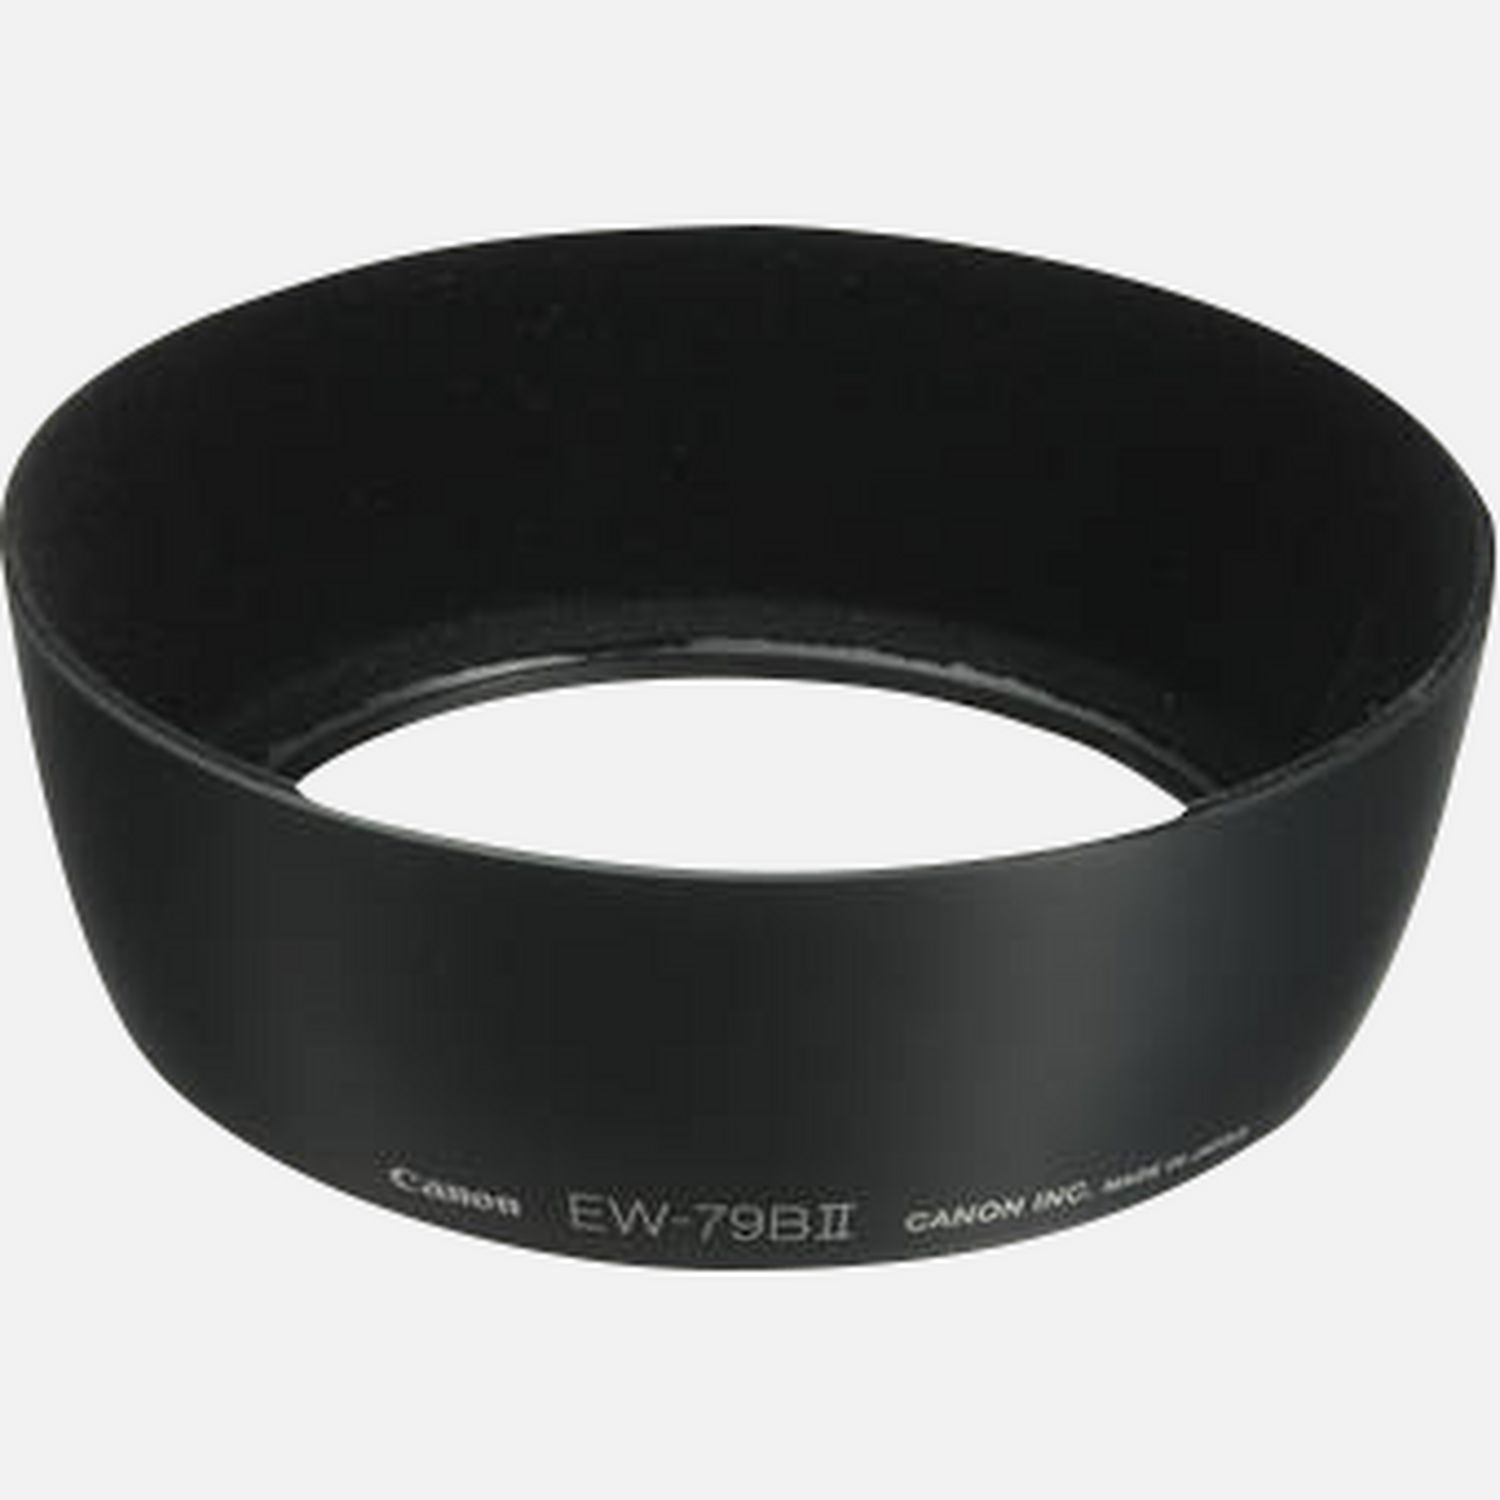 Passt auf das Objektiv TS-E 45mm 1:2,8, reduziert Reflexionen, die durch direkt auf die Frontlinse auffallendes Licht hervorgerufen werden.      Kompatibilitt       TS-E 45mm f/2.8